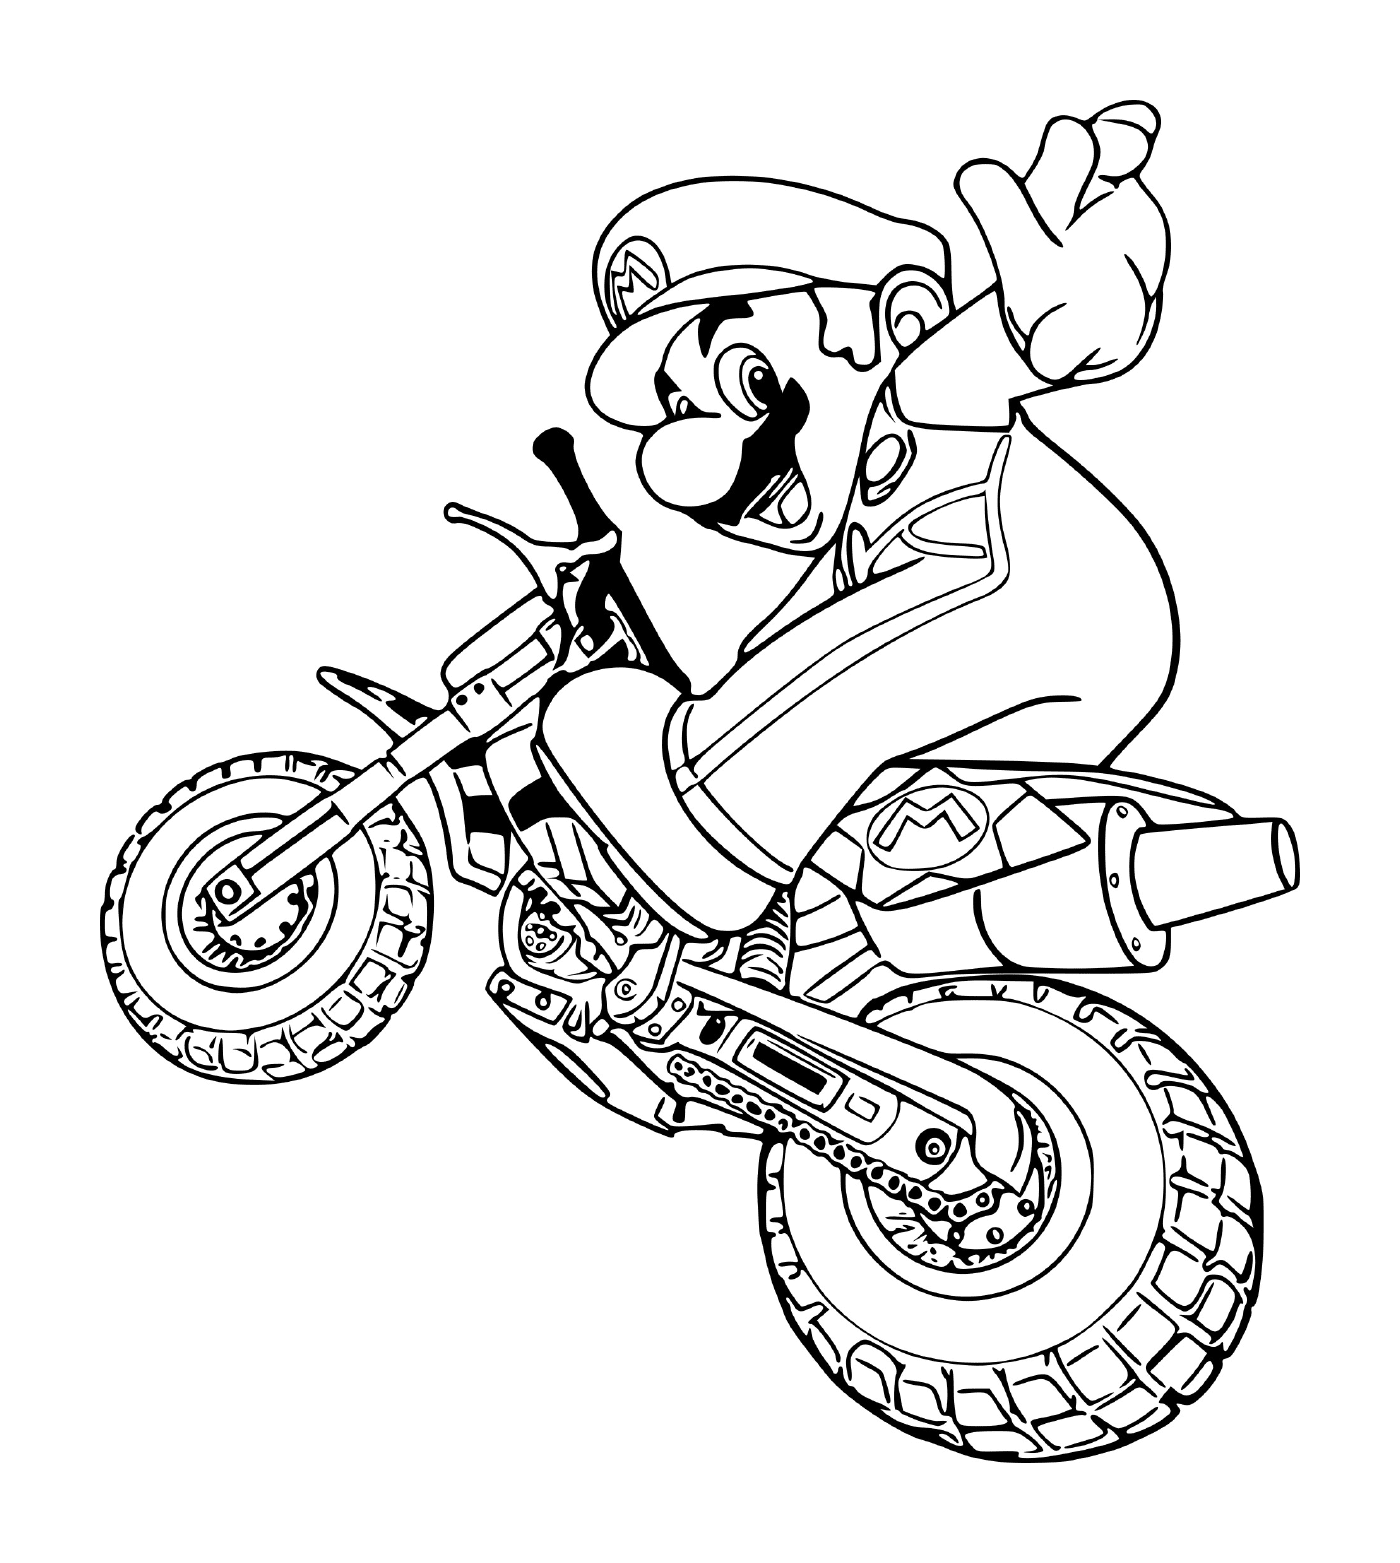  Марио в режиме мотоцикла, на мотоцикле 